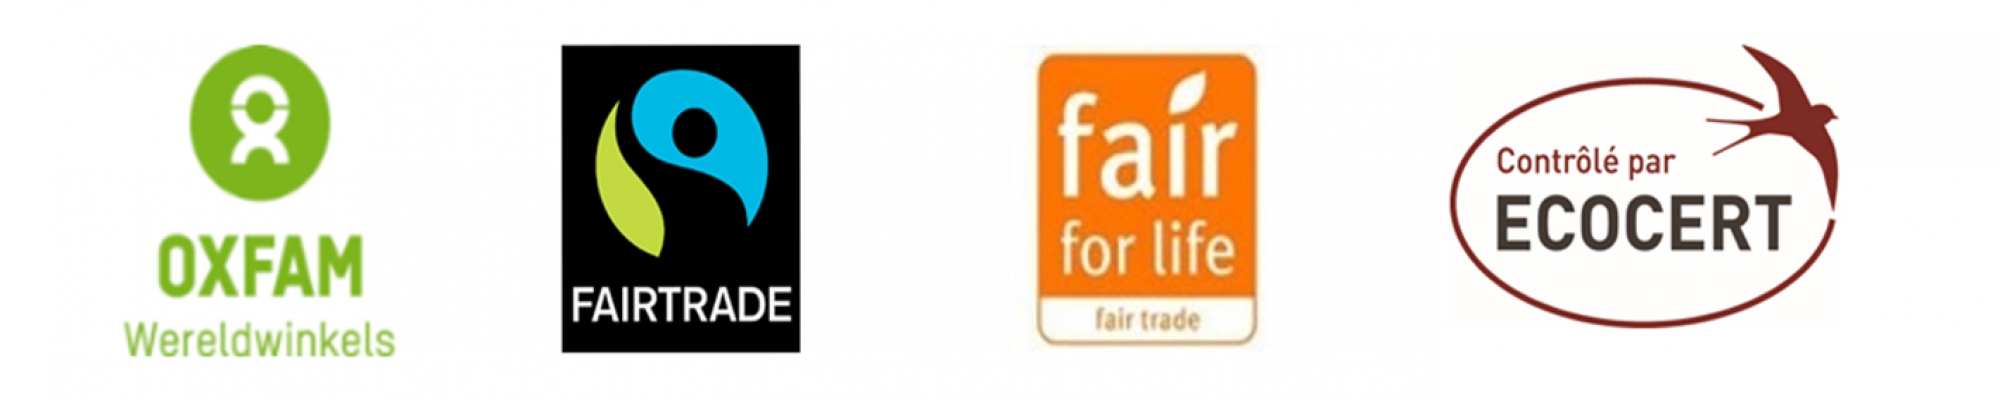 Foto van de 4 logo's waar fairtrade mee samenwerkt (Oxfam, fairtrade, fair for life, ecocert)